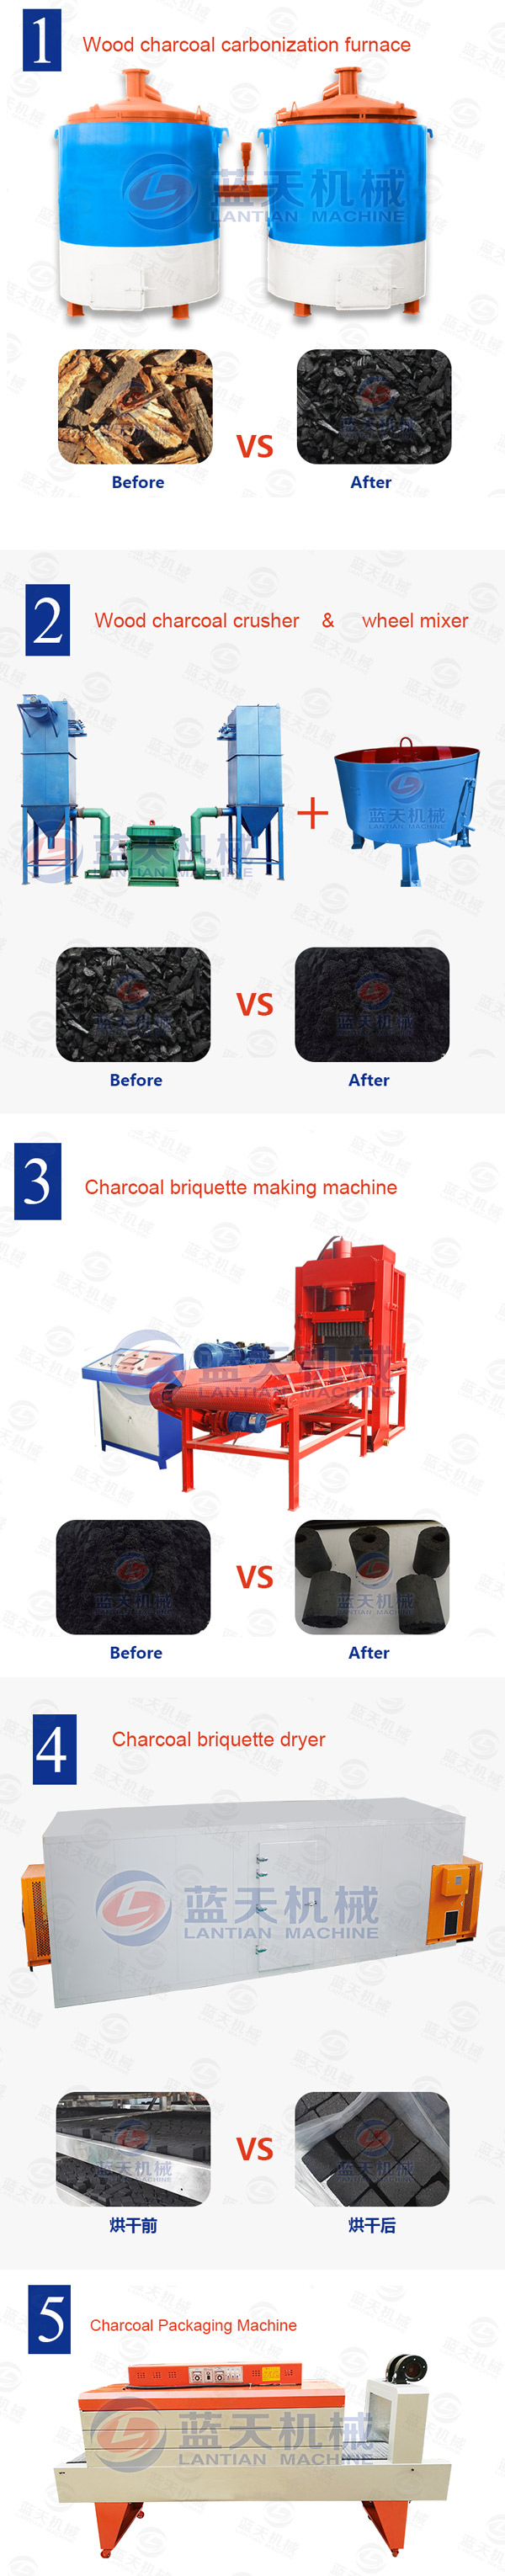 charcoal briquettes making machine